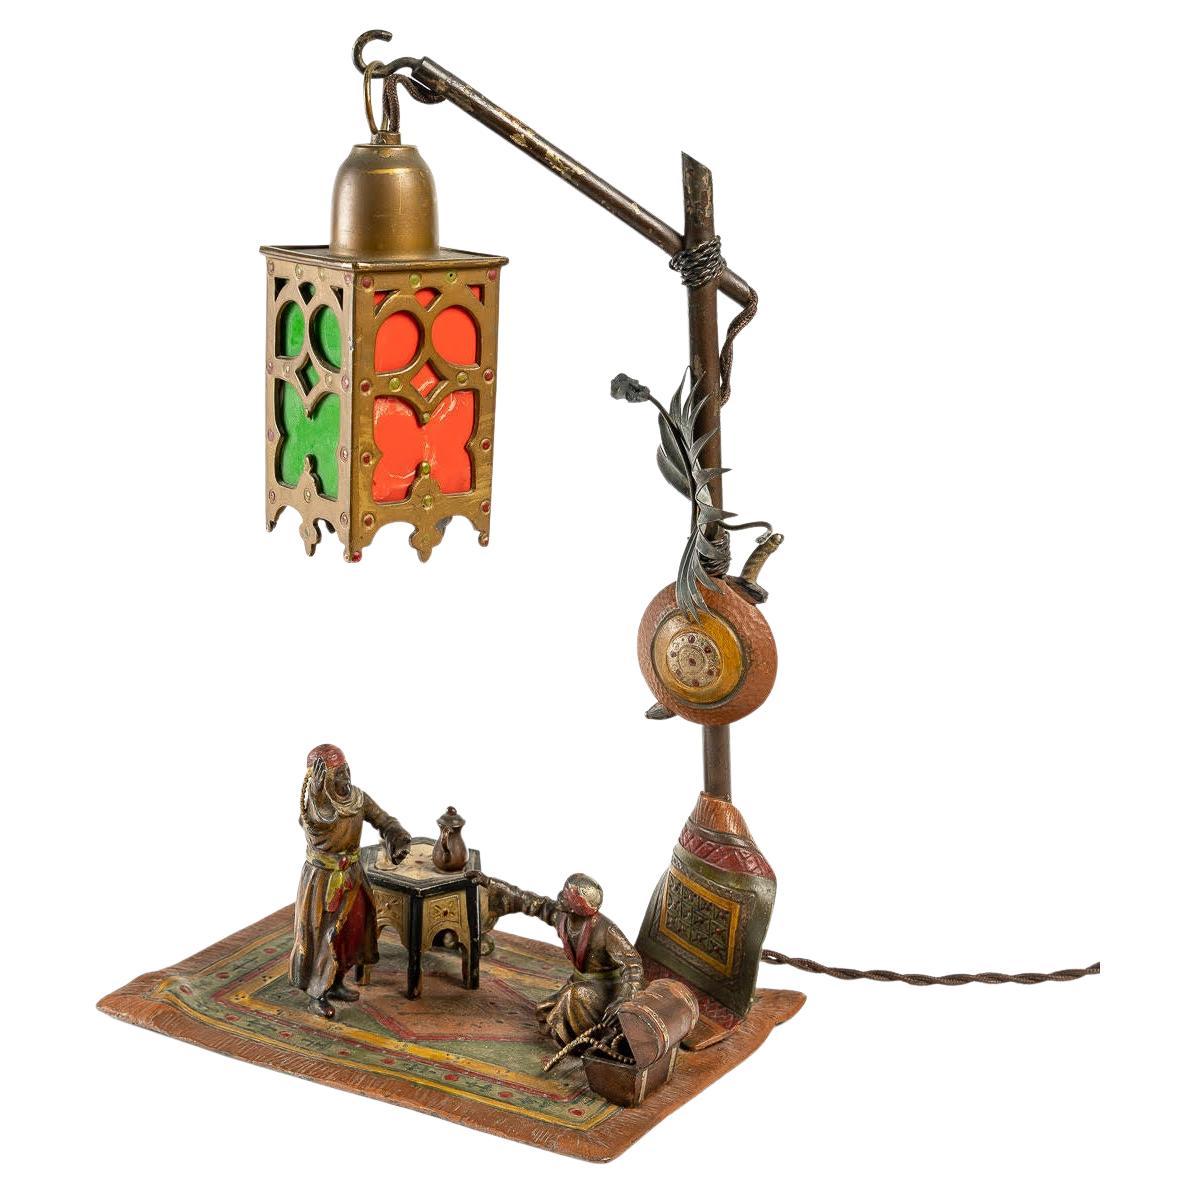 Bronzelampe aus Wien, orientalisch, 19. Jahrhundert.